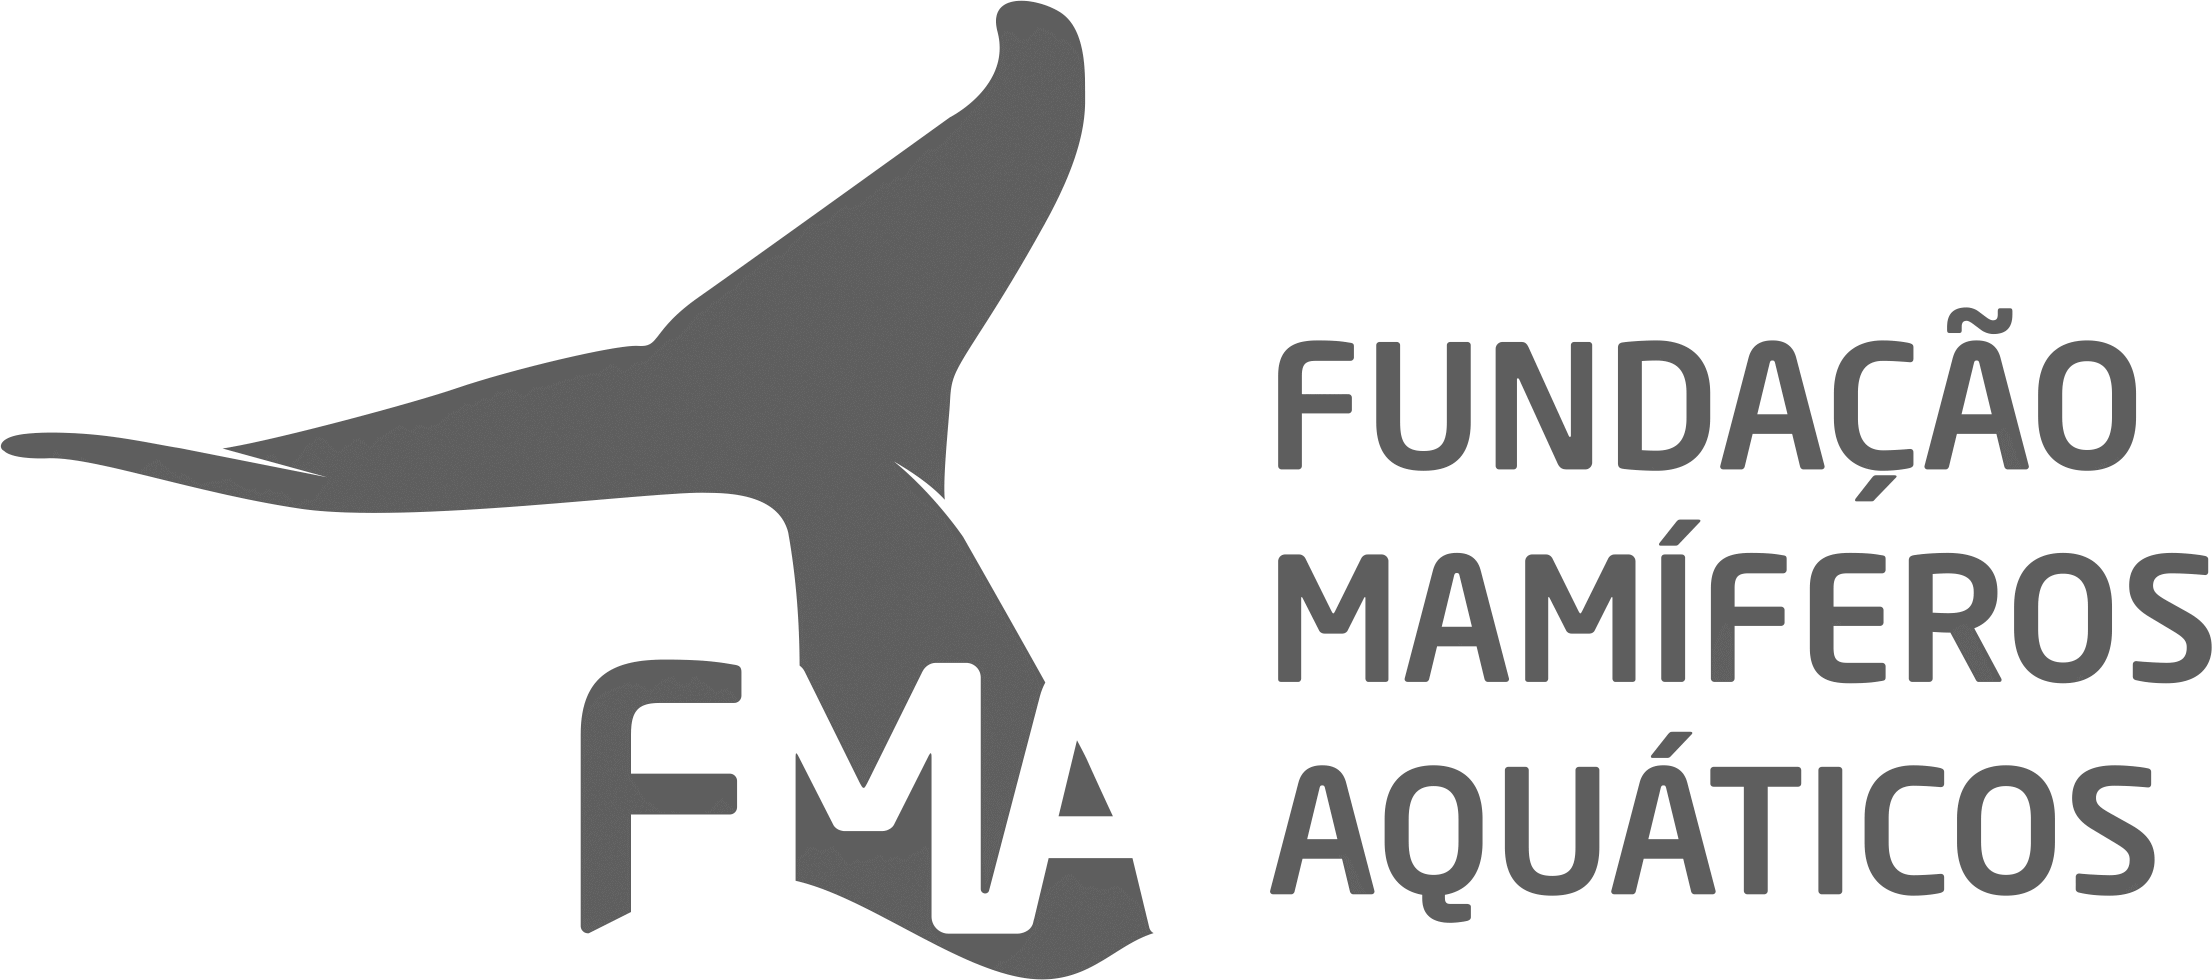 Aquatic Mammals Foundation